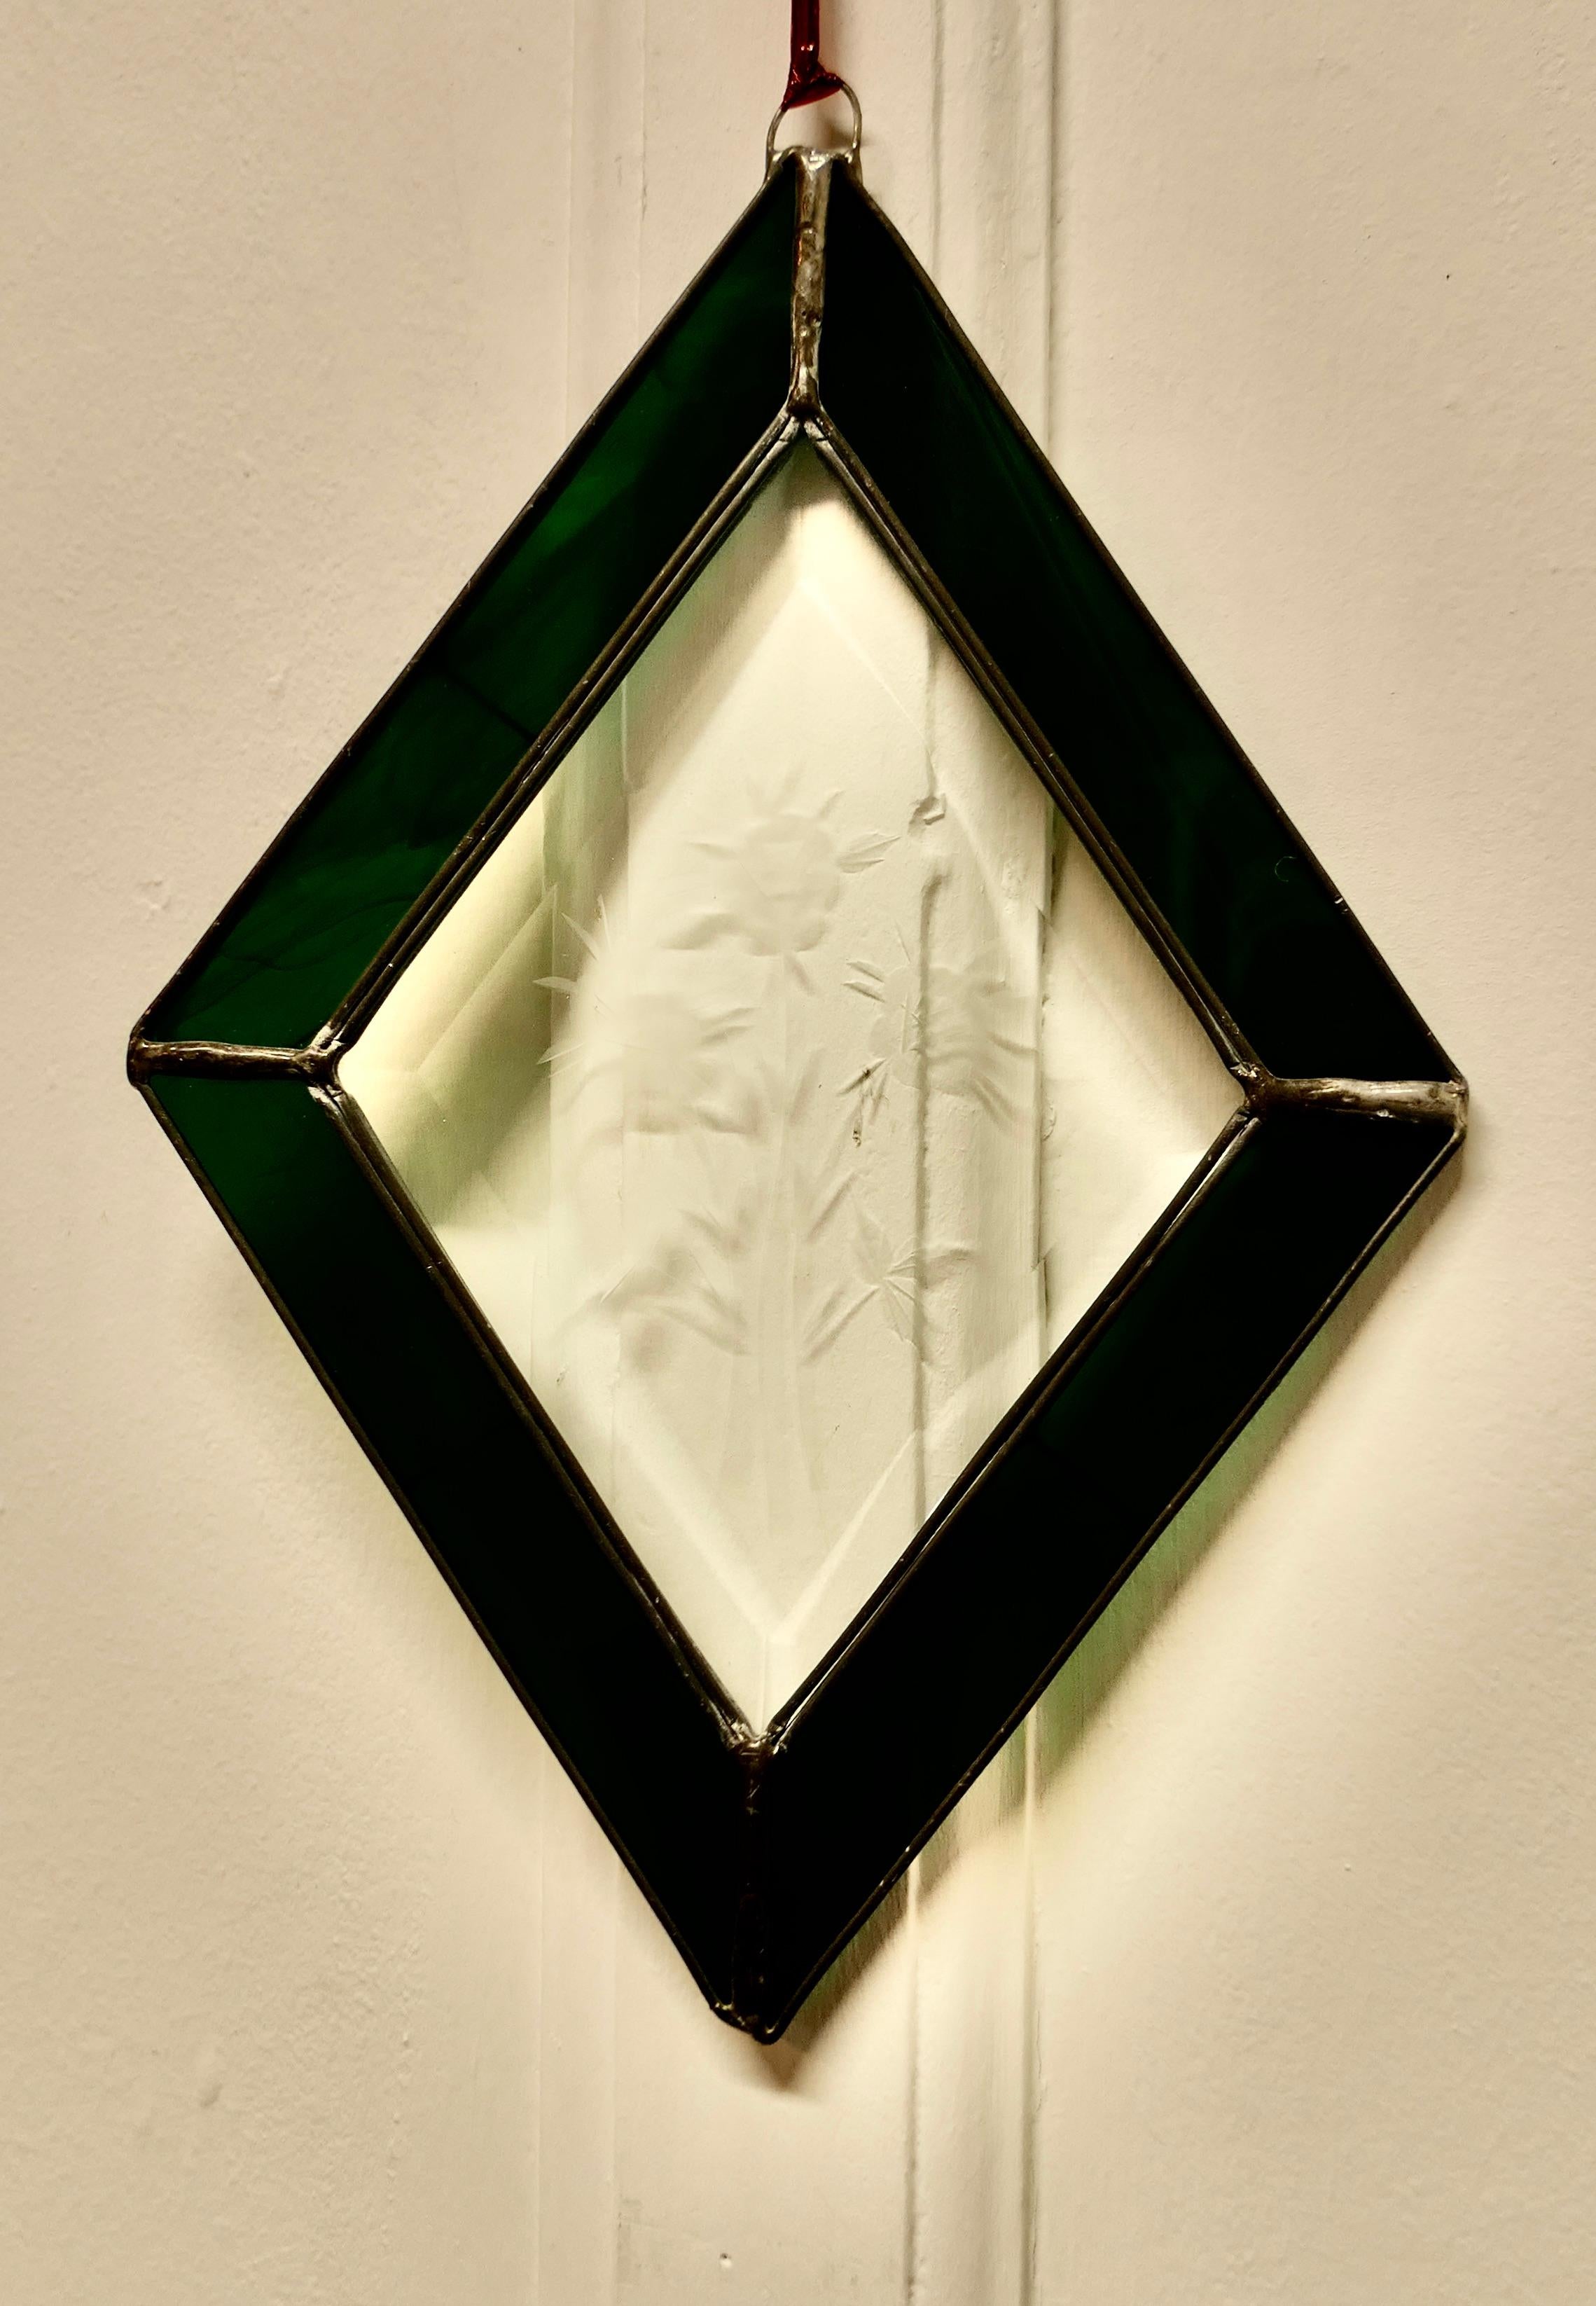 Französische handgefertigte antike Glasmalerei Fensterscheibe

Dieses hübsche, handwerklich hergestellte Stück wurde aus grün schillerndem und geätztem Glas aus dem 19. Jahrhundert hergestellt, das gekonnt zu einem rautenförmigen Muster gefasst